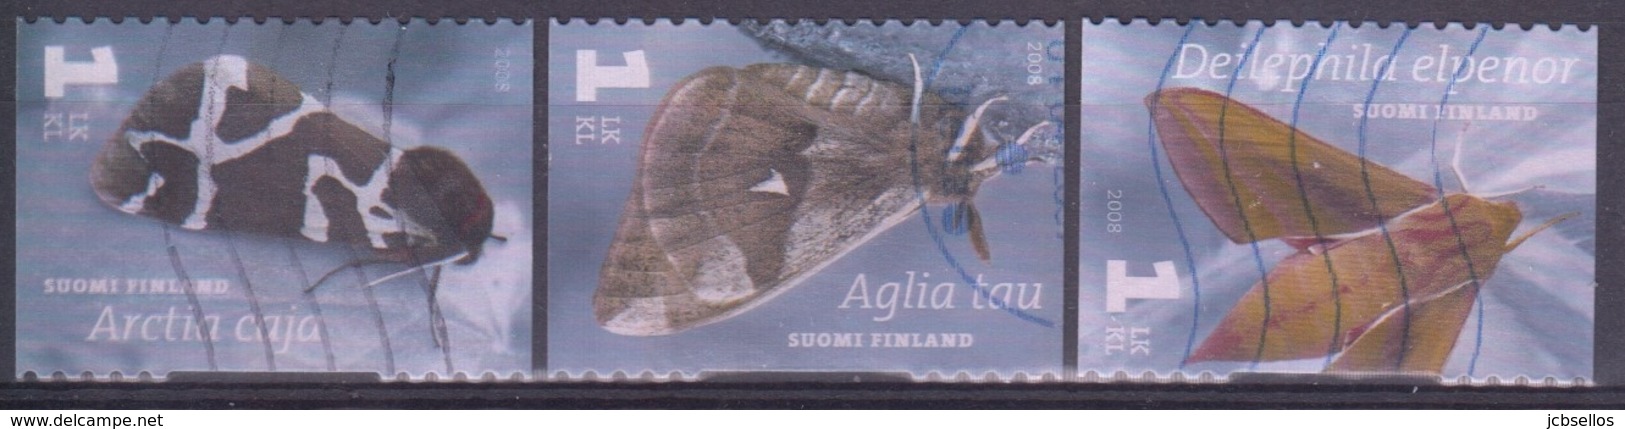 FINLANDIA 2008 Nº 1888/90 USADO - Used Stamps